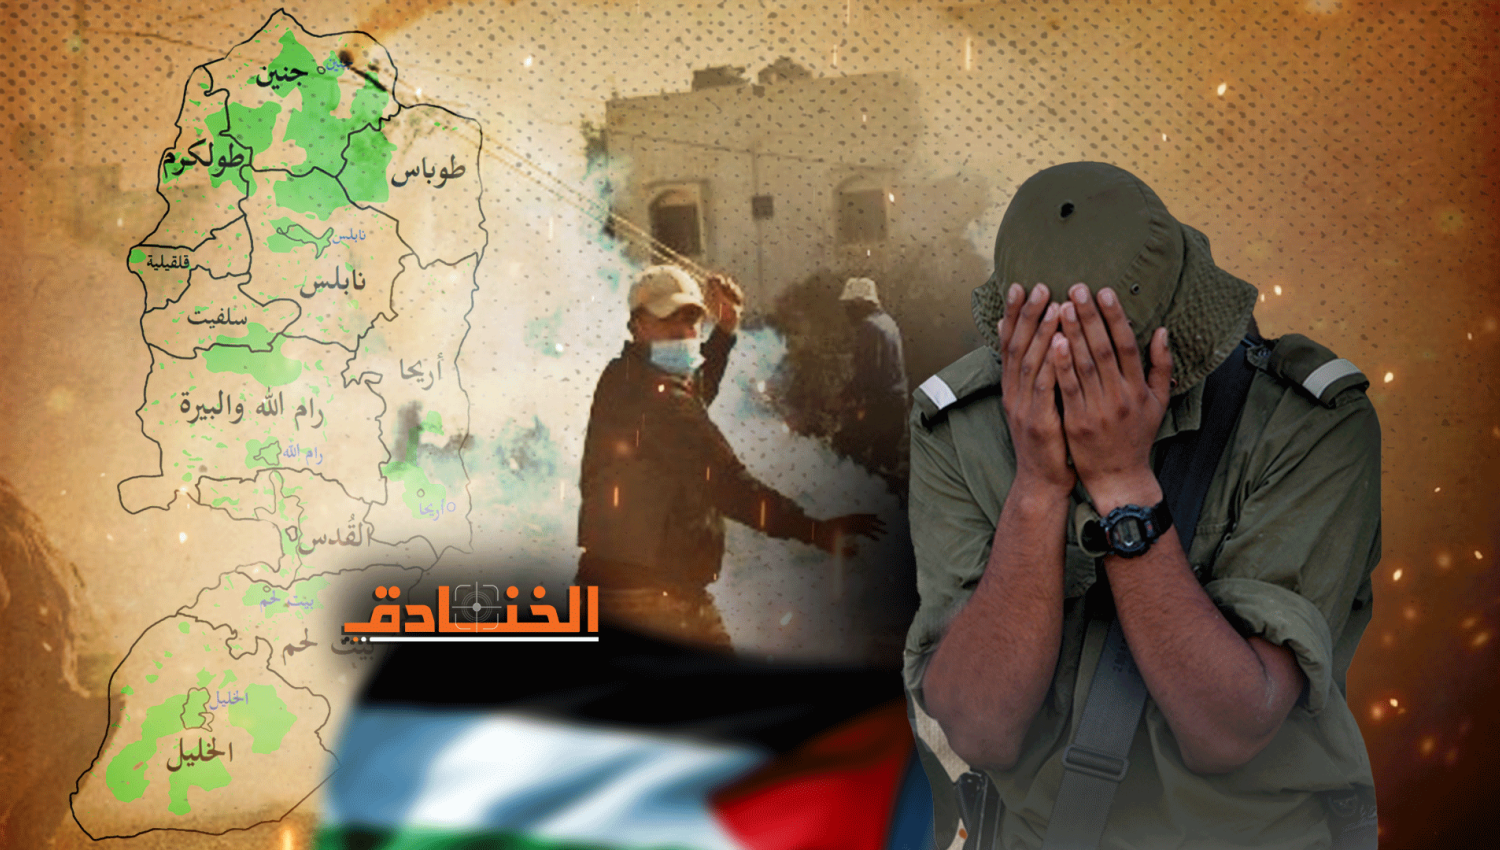 إسرائيل اليوم: المقاومة المتصاعدة في الضفة مصدر قلق لإسرائيل